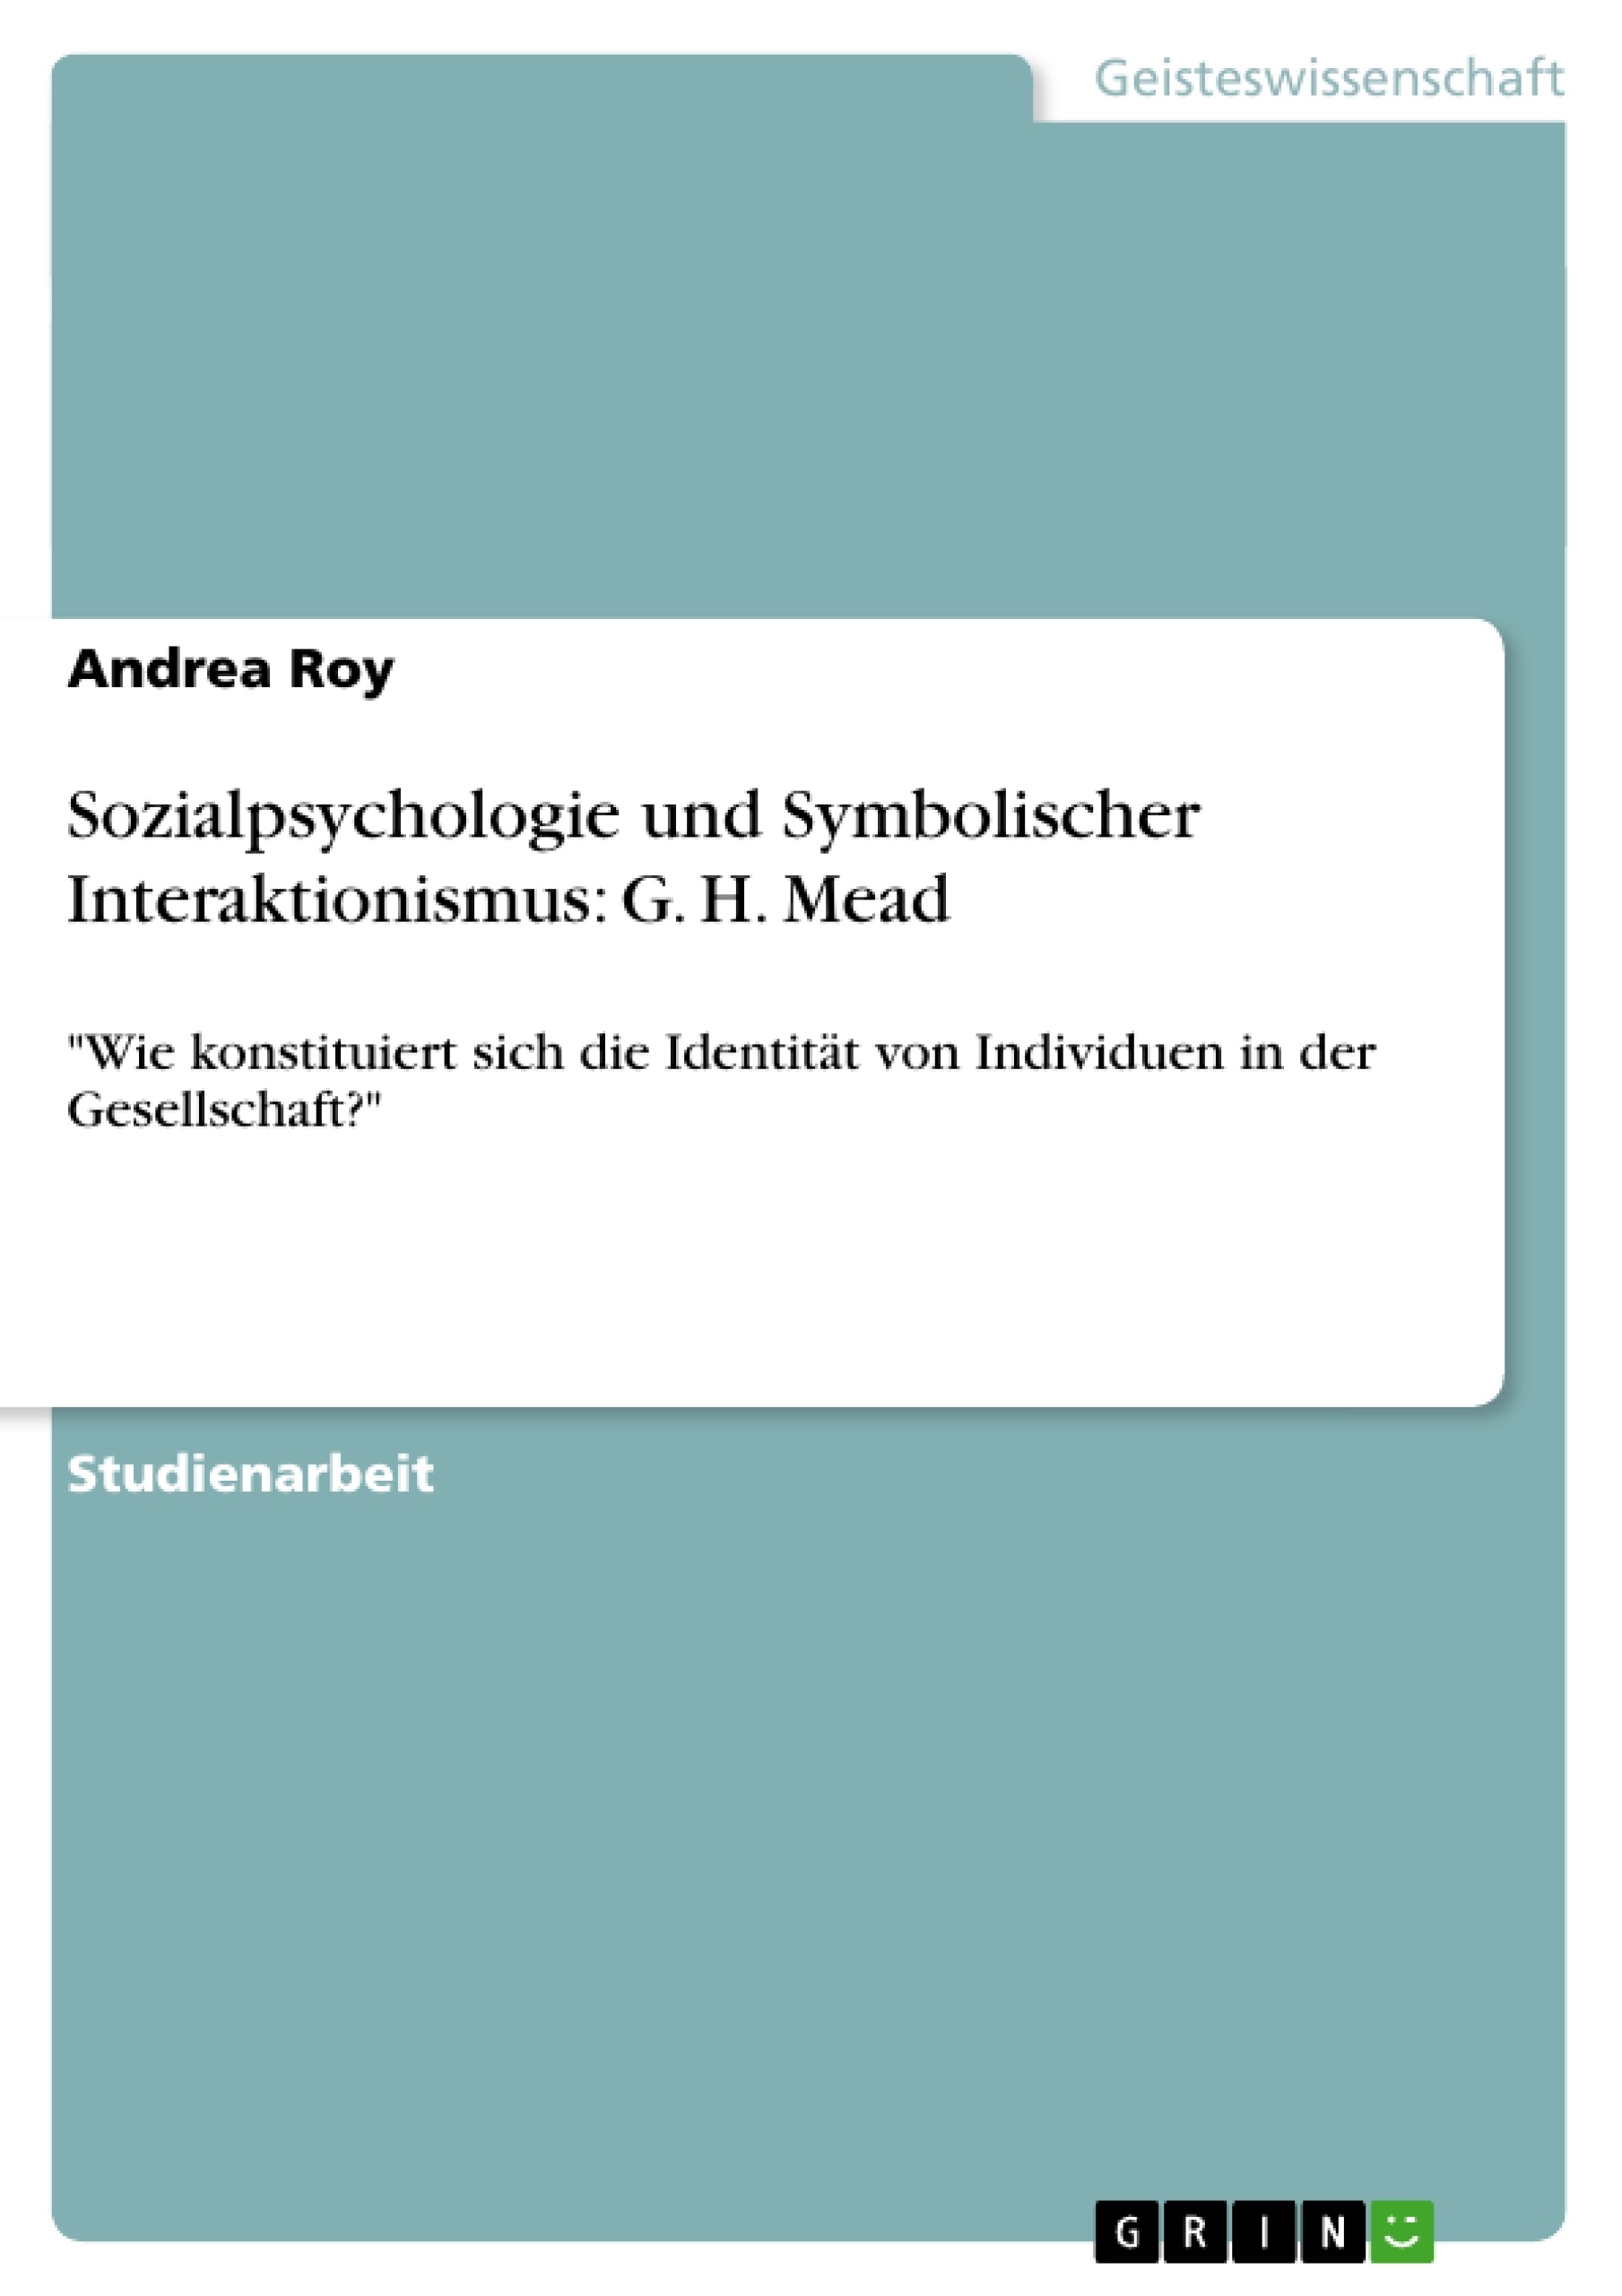 Title: Sozialpsychologie und Symbolischer Interaktionismus: G. H. Mead